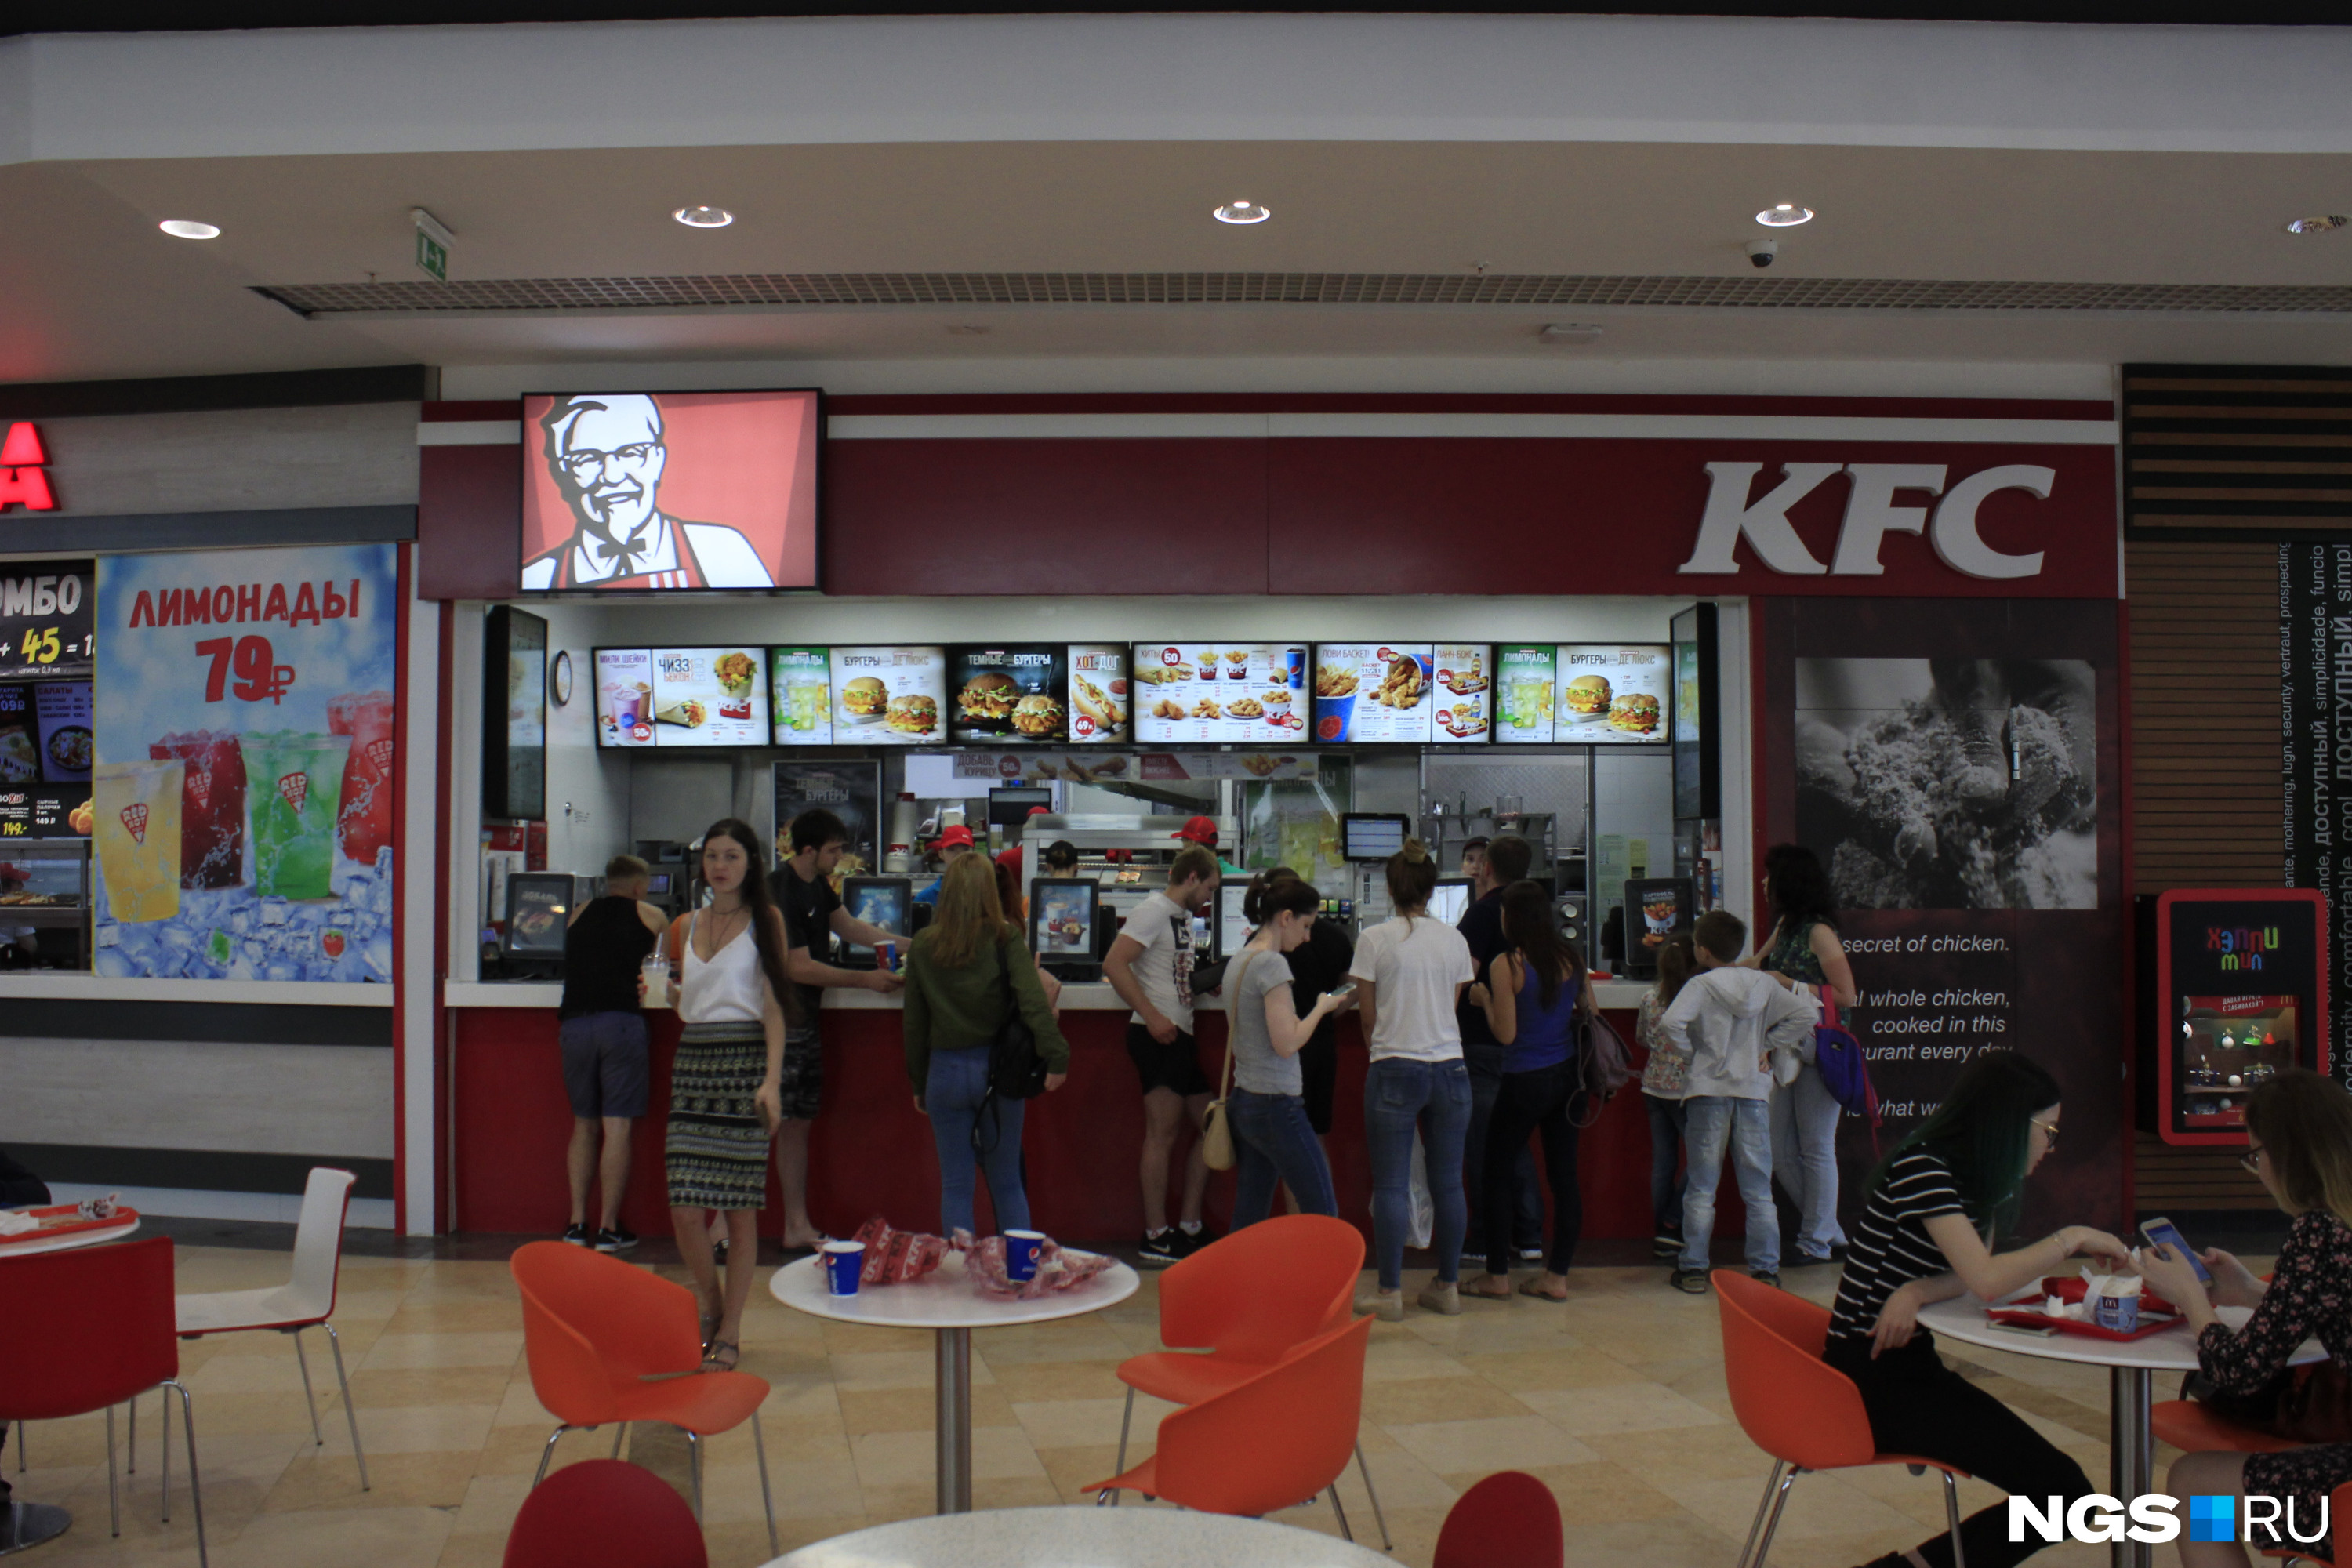 Самая крупная сеть стационарного фастфуда в Новосибирске — американская KFC